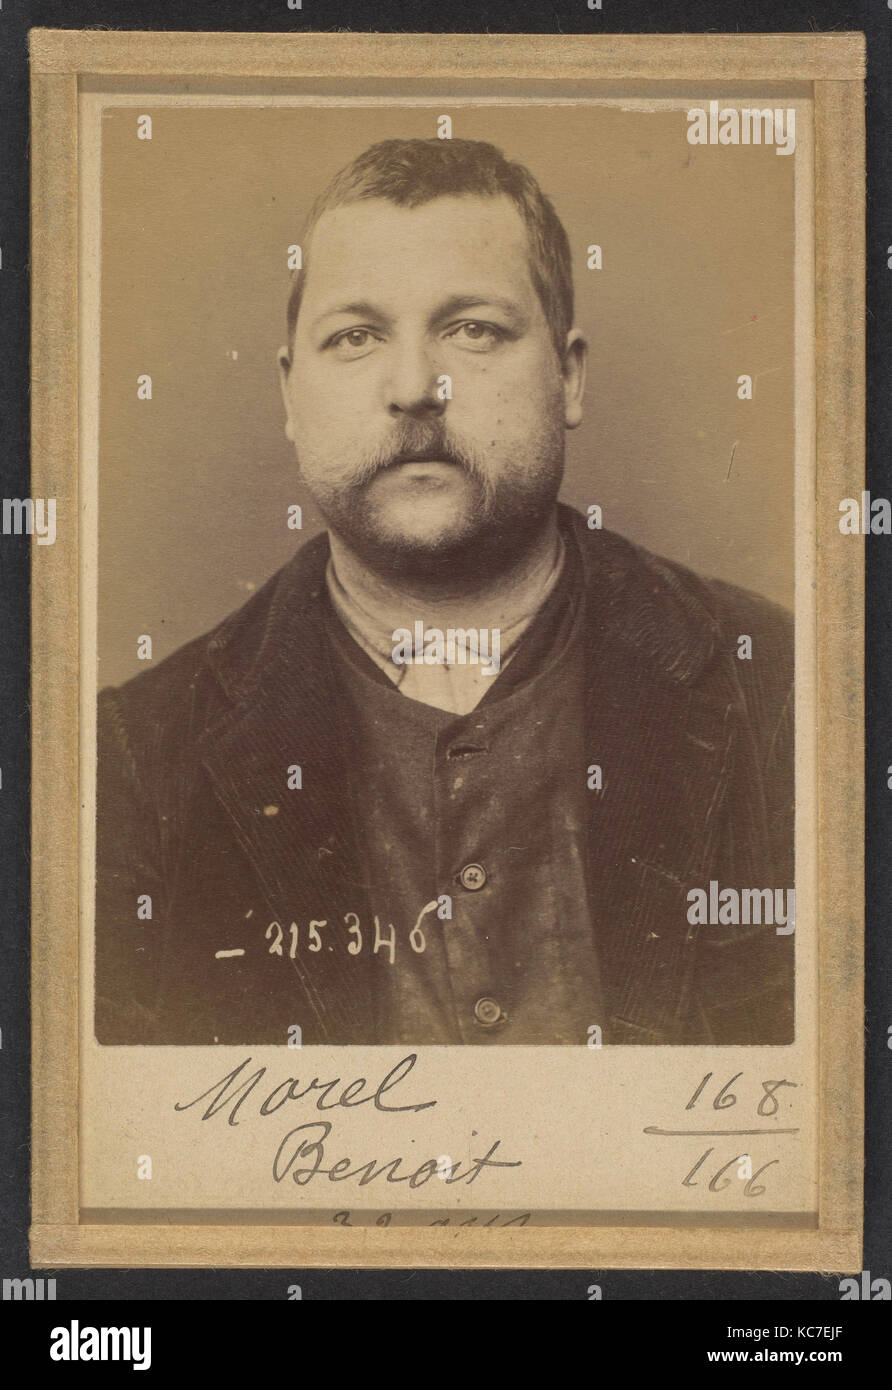 Morel. Benoit. 33 ans, né Le 6/11/61 à St Laurent d'Orringt (Rhône). Ébéniste. Anarchiste. 8/3/94., Alphonse Bertillon, 1894 Stockfoto